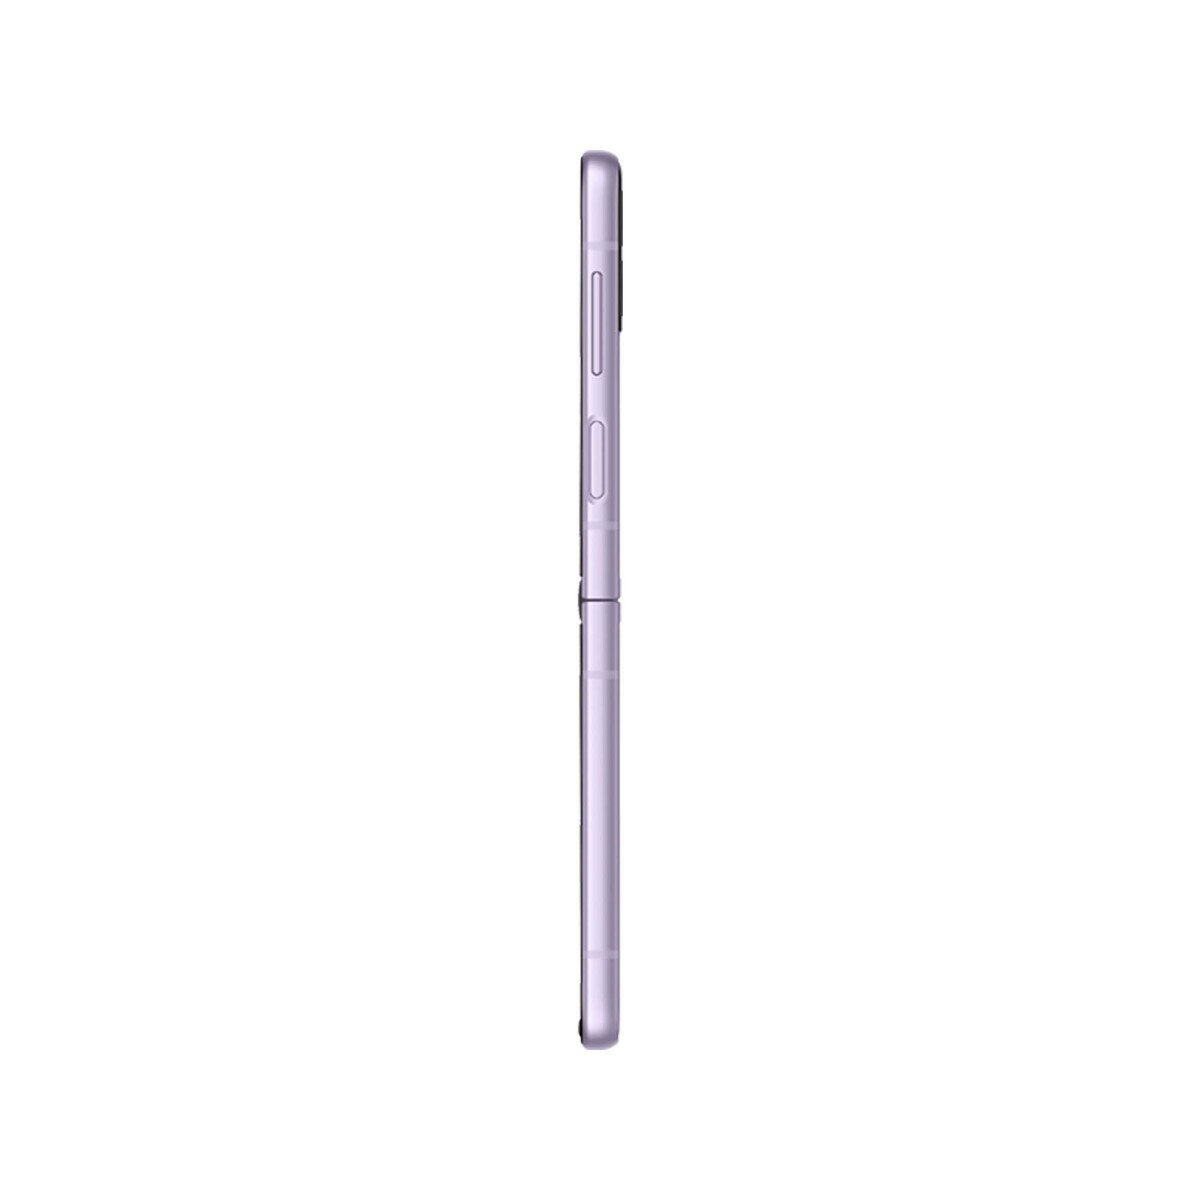 Samsung Galaxy Z Flip 3 F711 128GB 5G Lavender